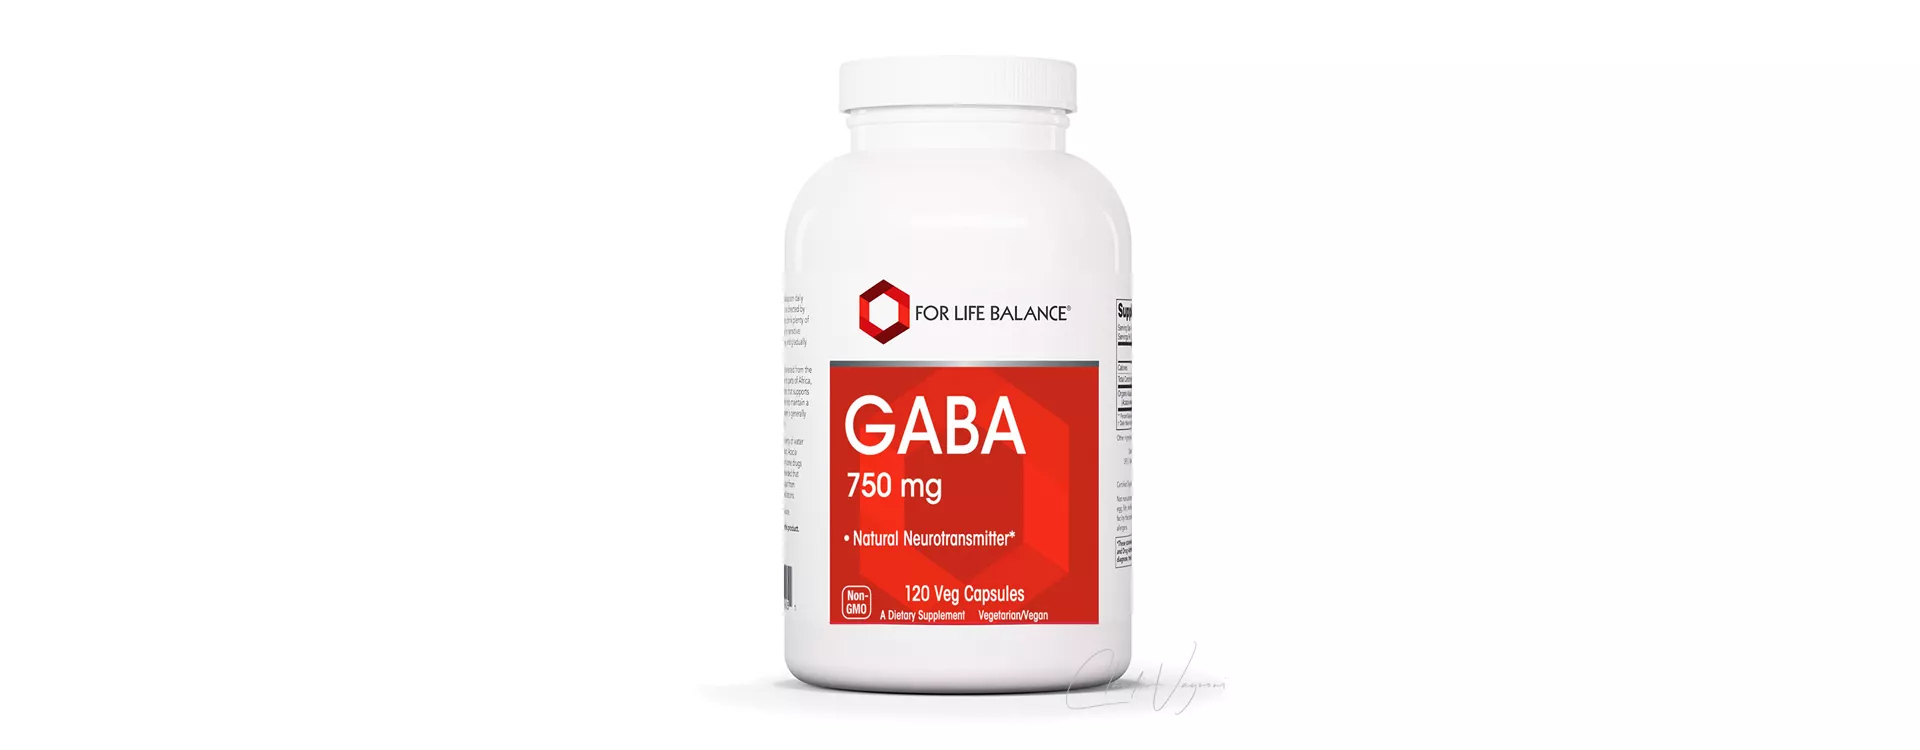 GABA im Bodybuilding und für den Muskelaufbau